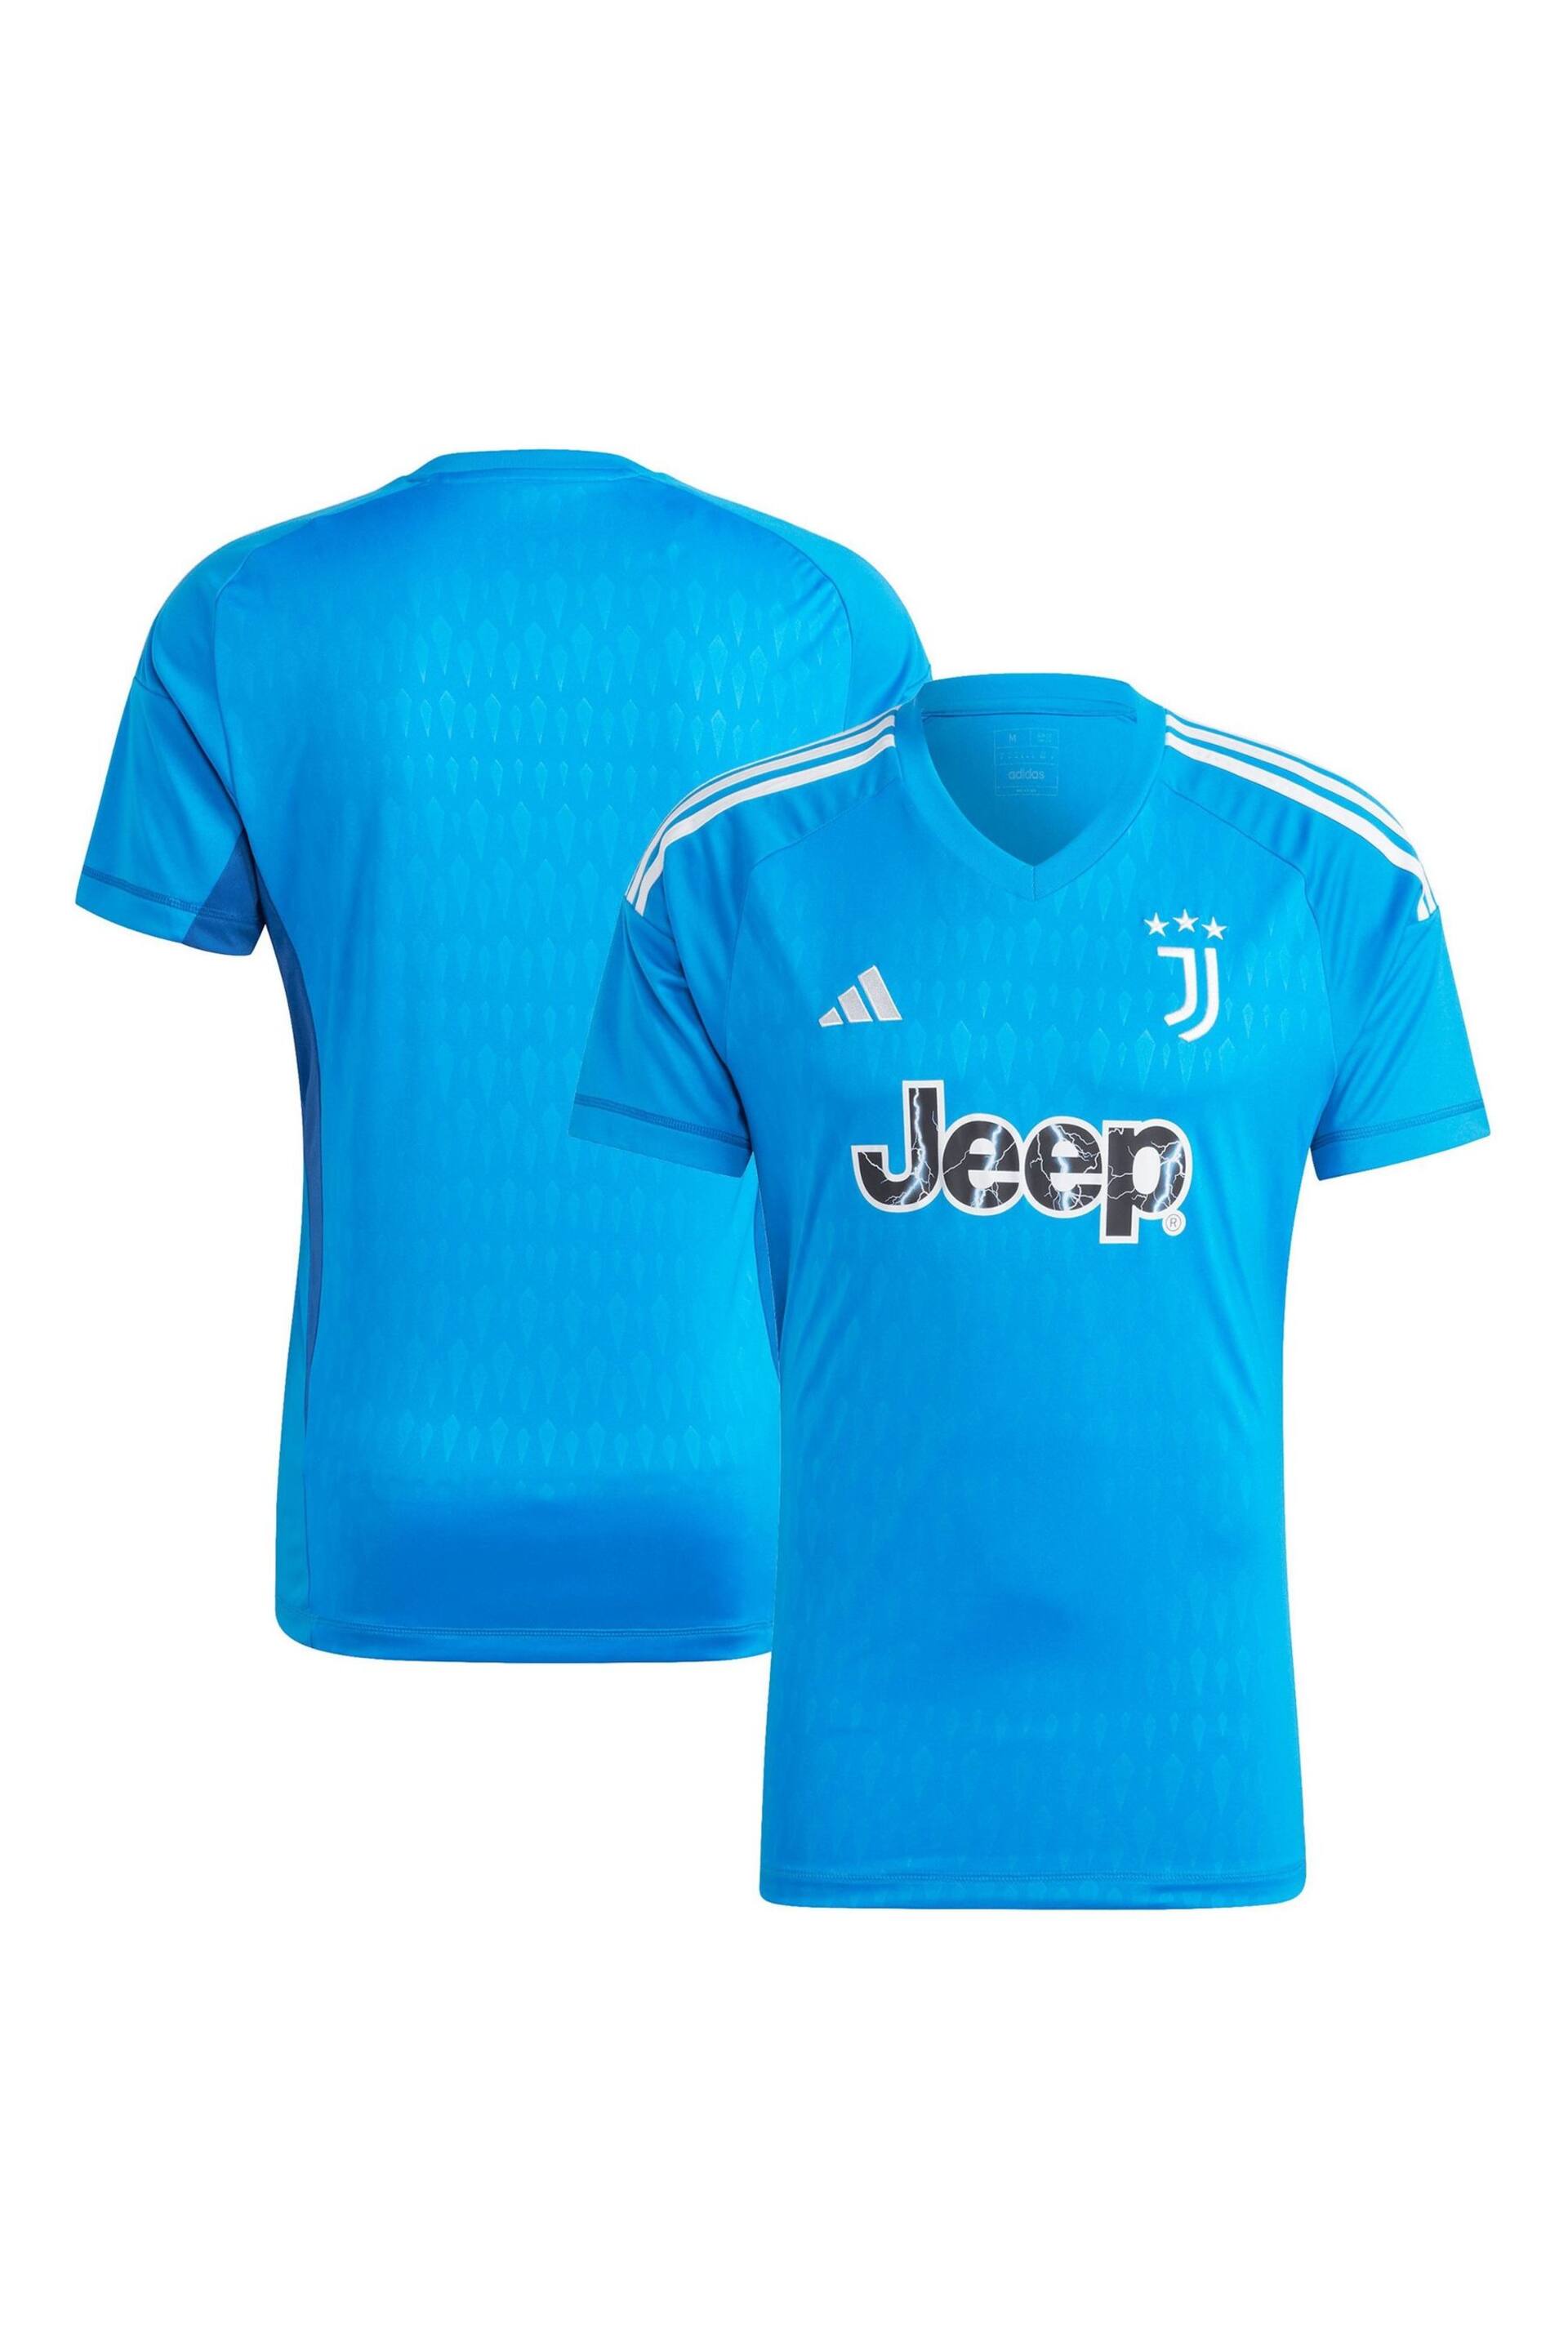 adidas Blue Juventus Goalkeeper Shirt Kids - Image 1 of 2